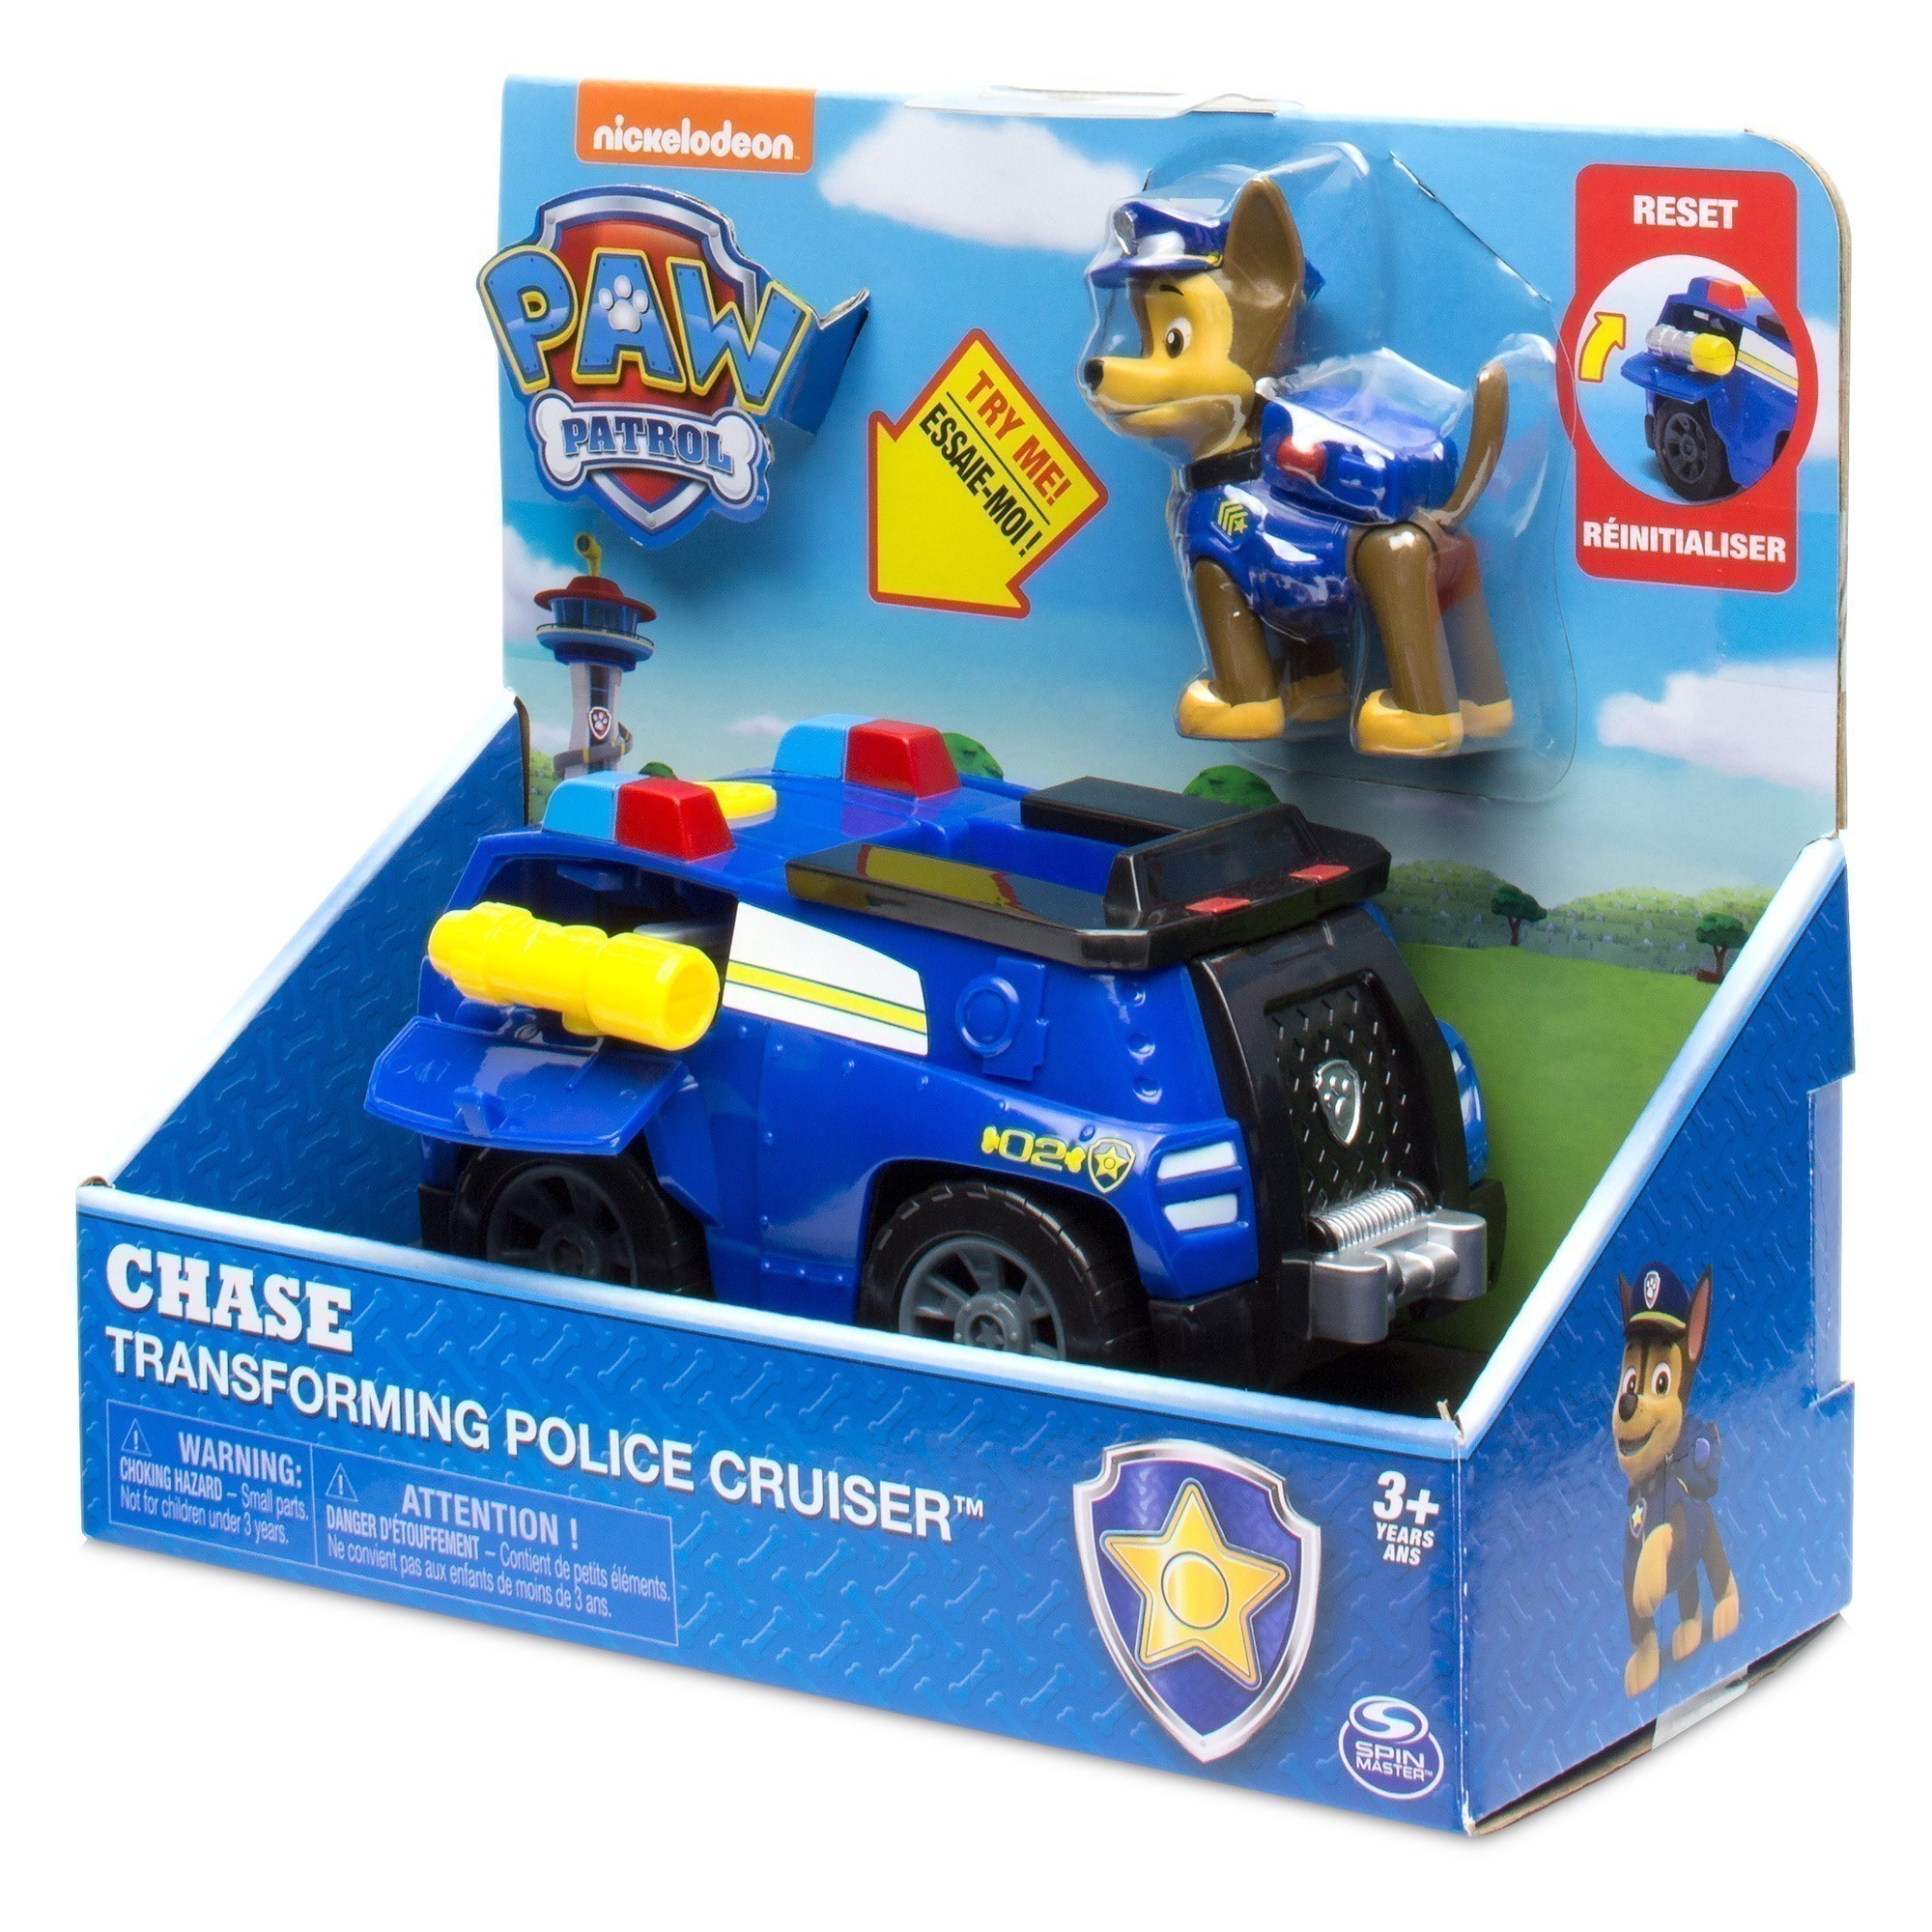 Nickelodeon - Paw Patrol - Chase Transforming Police Cruiser